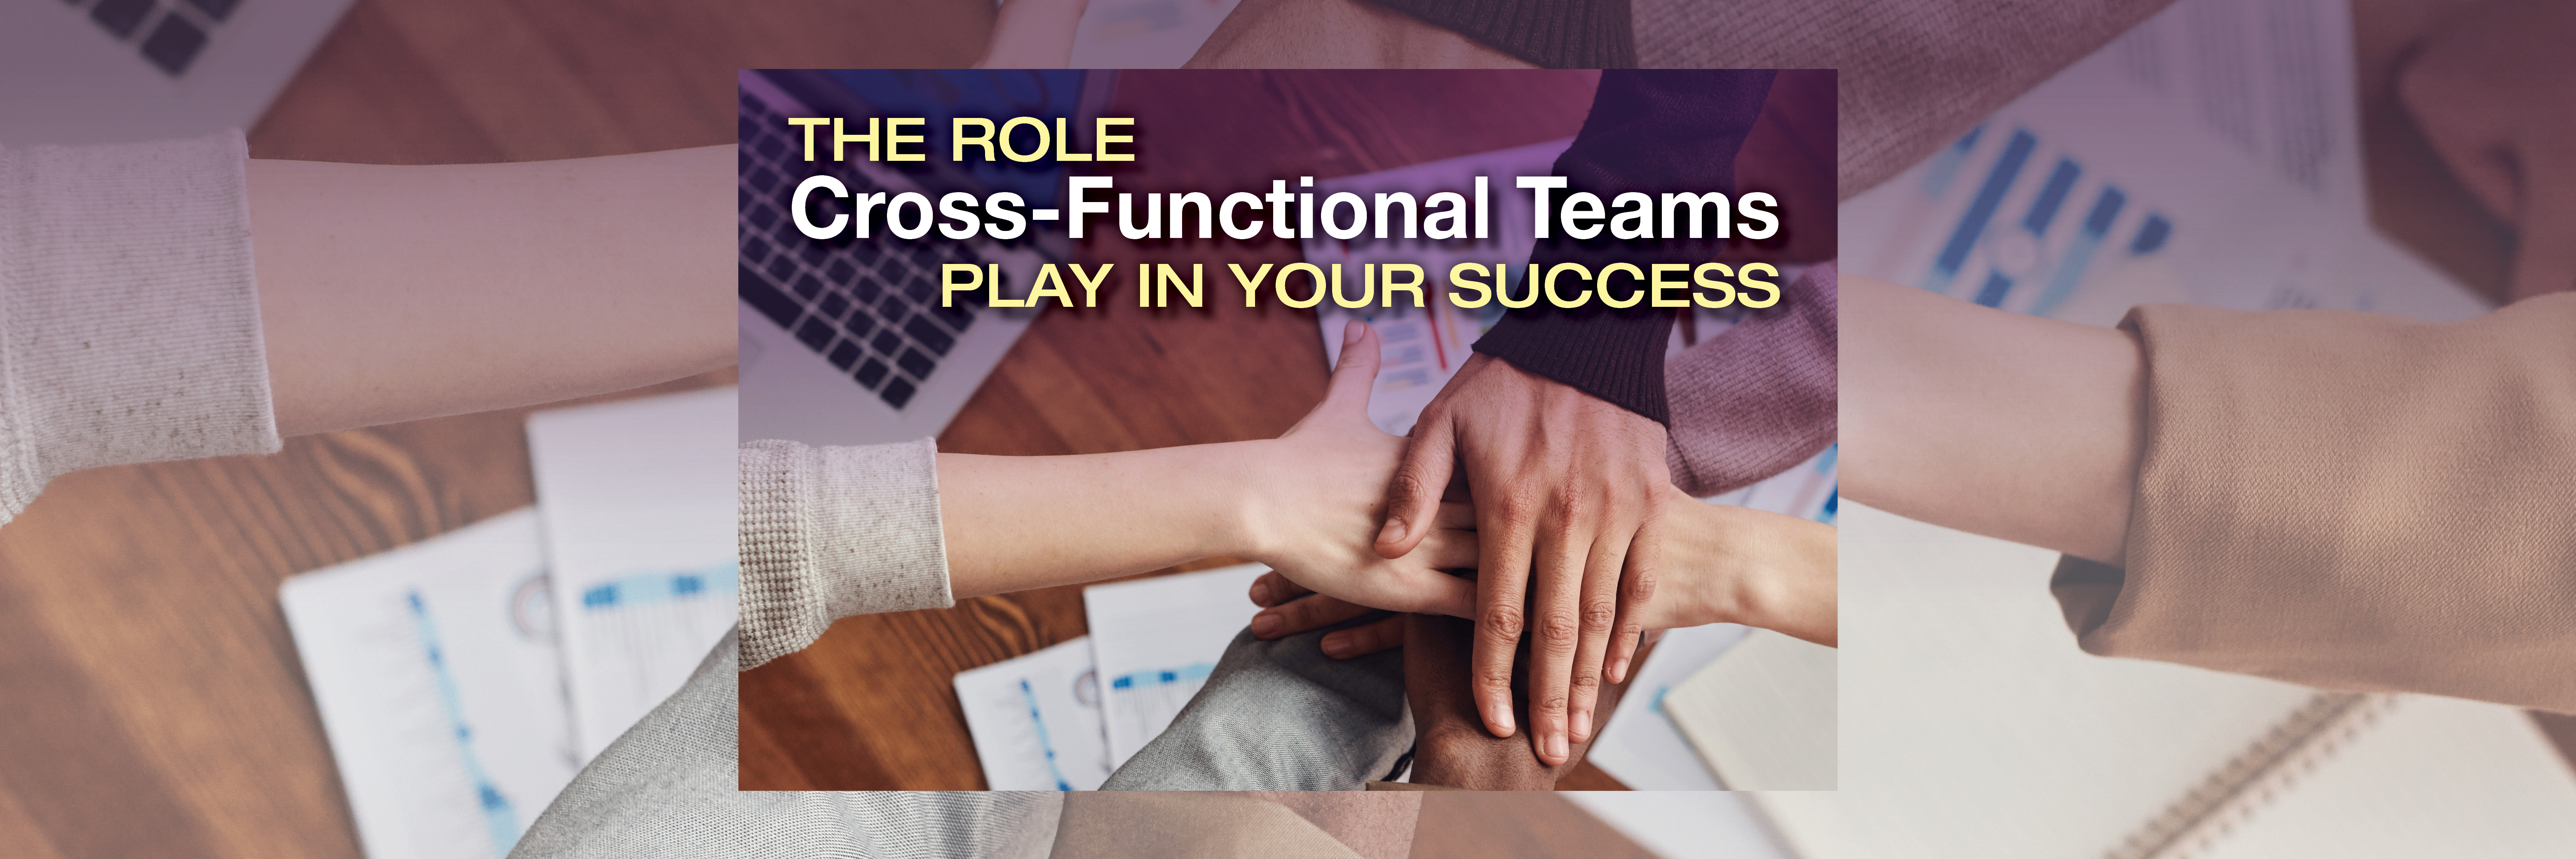 Cross Functional Teams Blog Header 051221-1